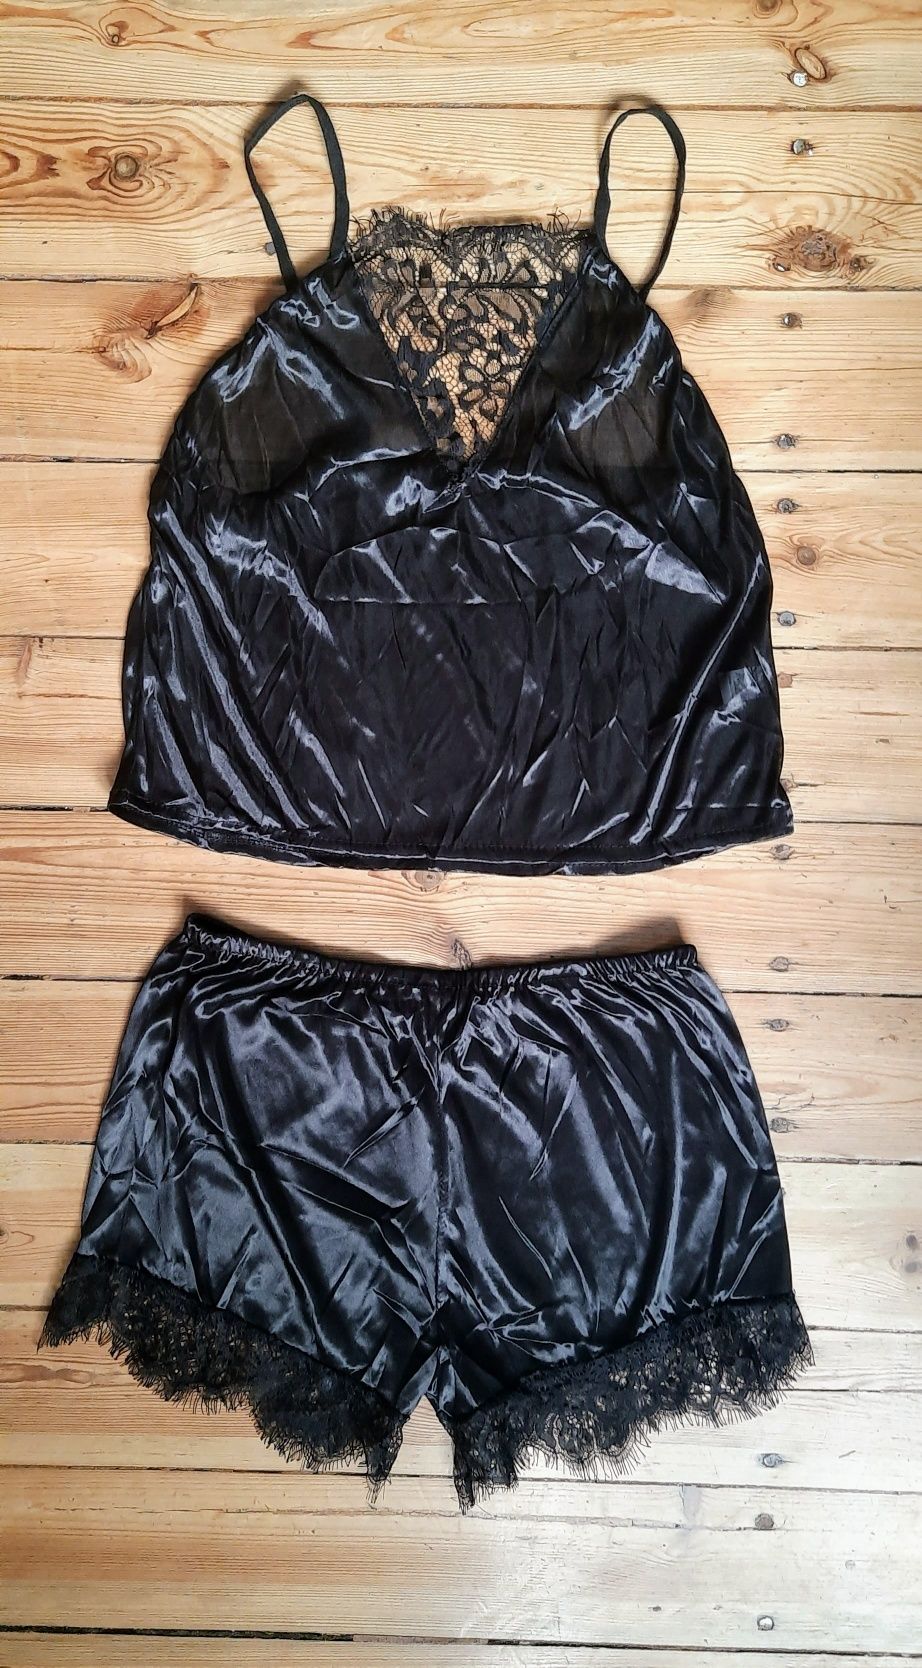 Damska koronkowa dwucześciowa  czarna piżama rozmiar M